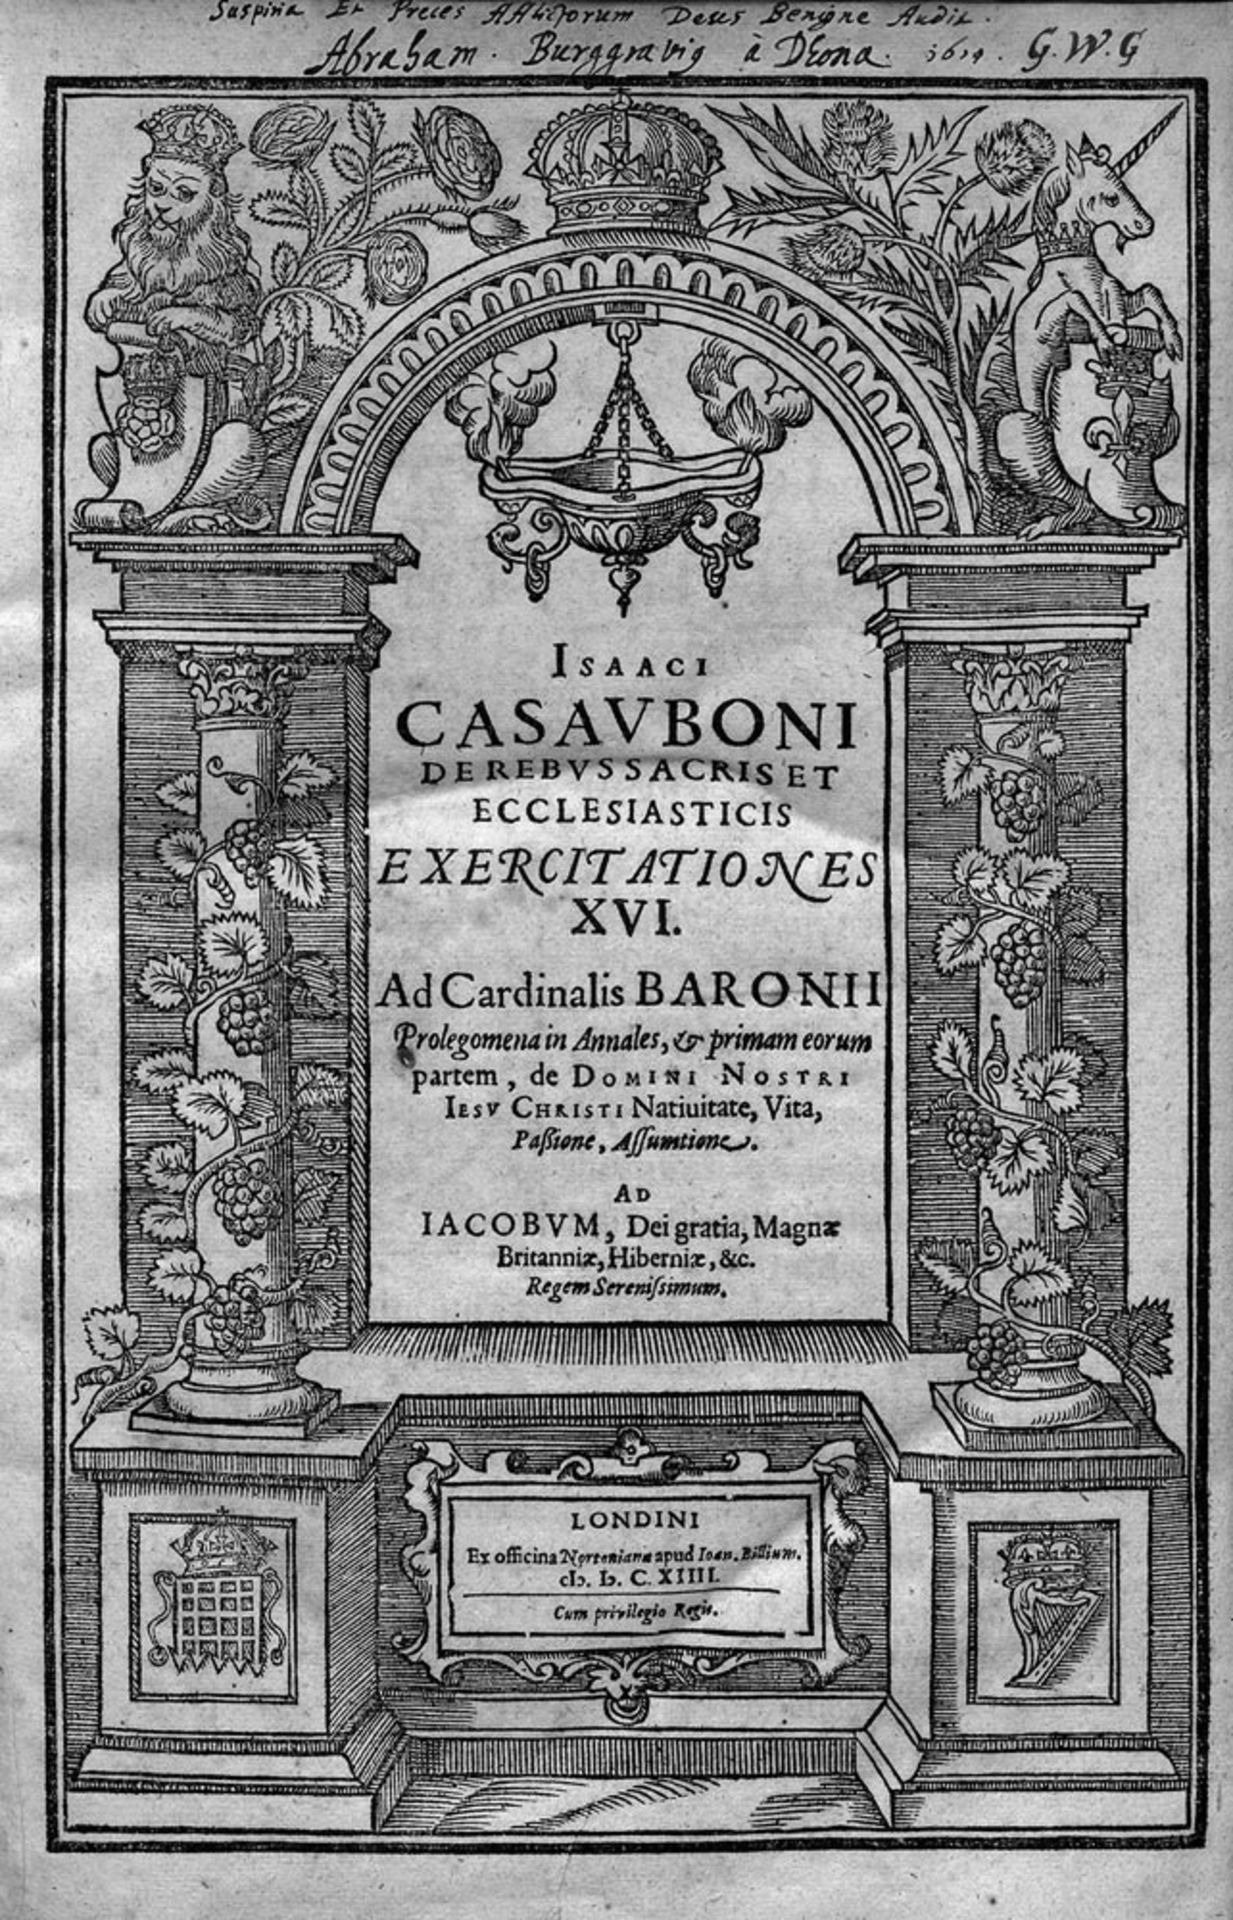 Casaubon, Isaac: De rebus sacris et ecclesiastis exercitationes